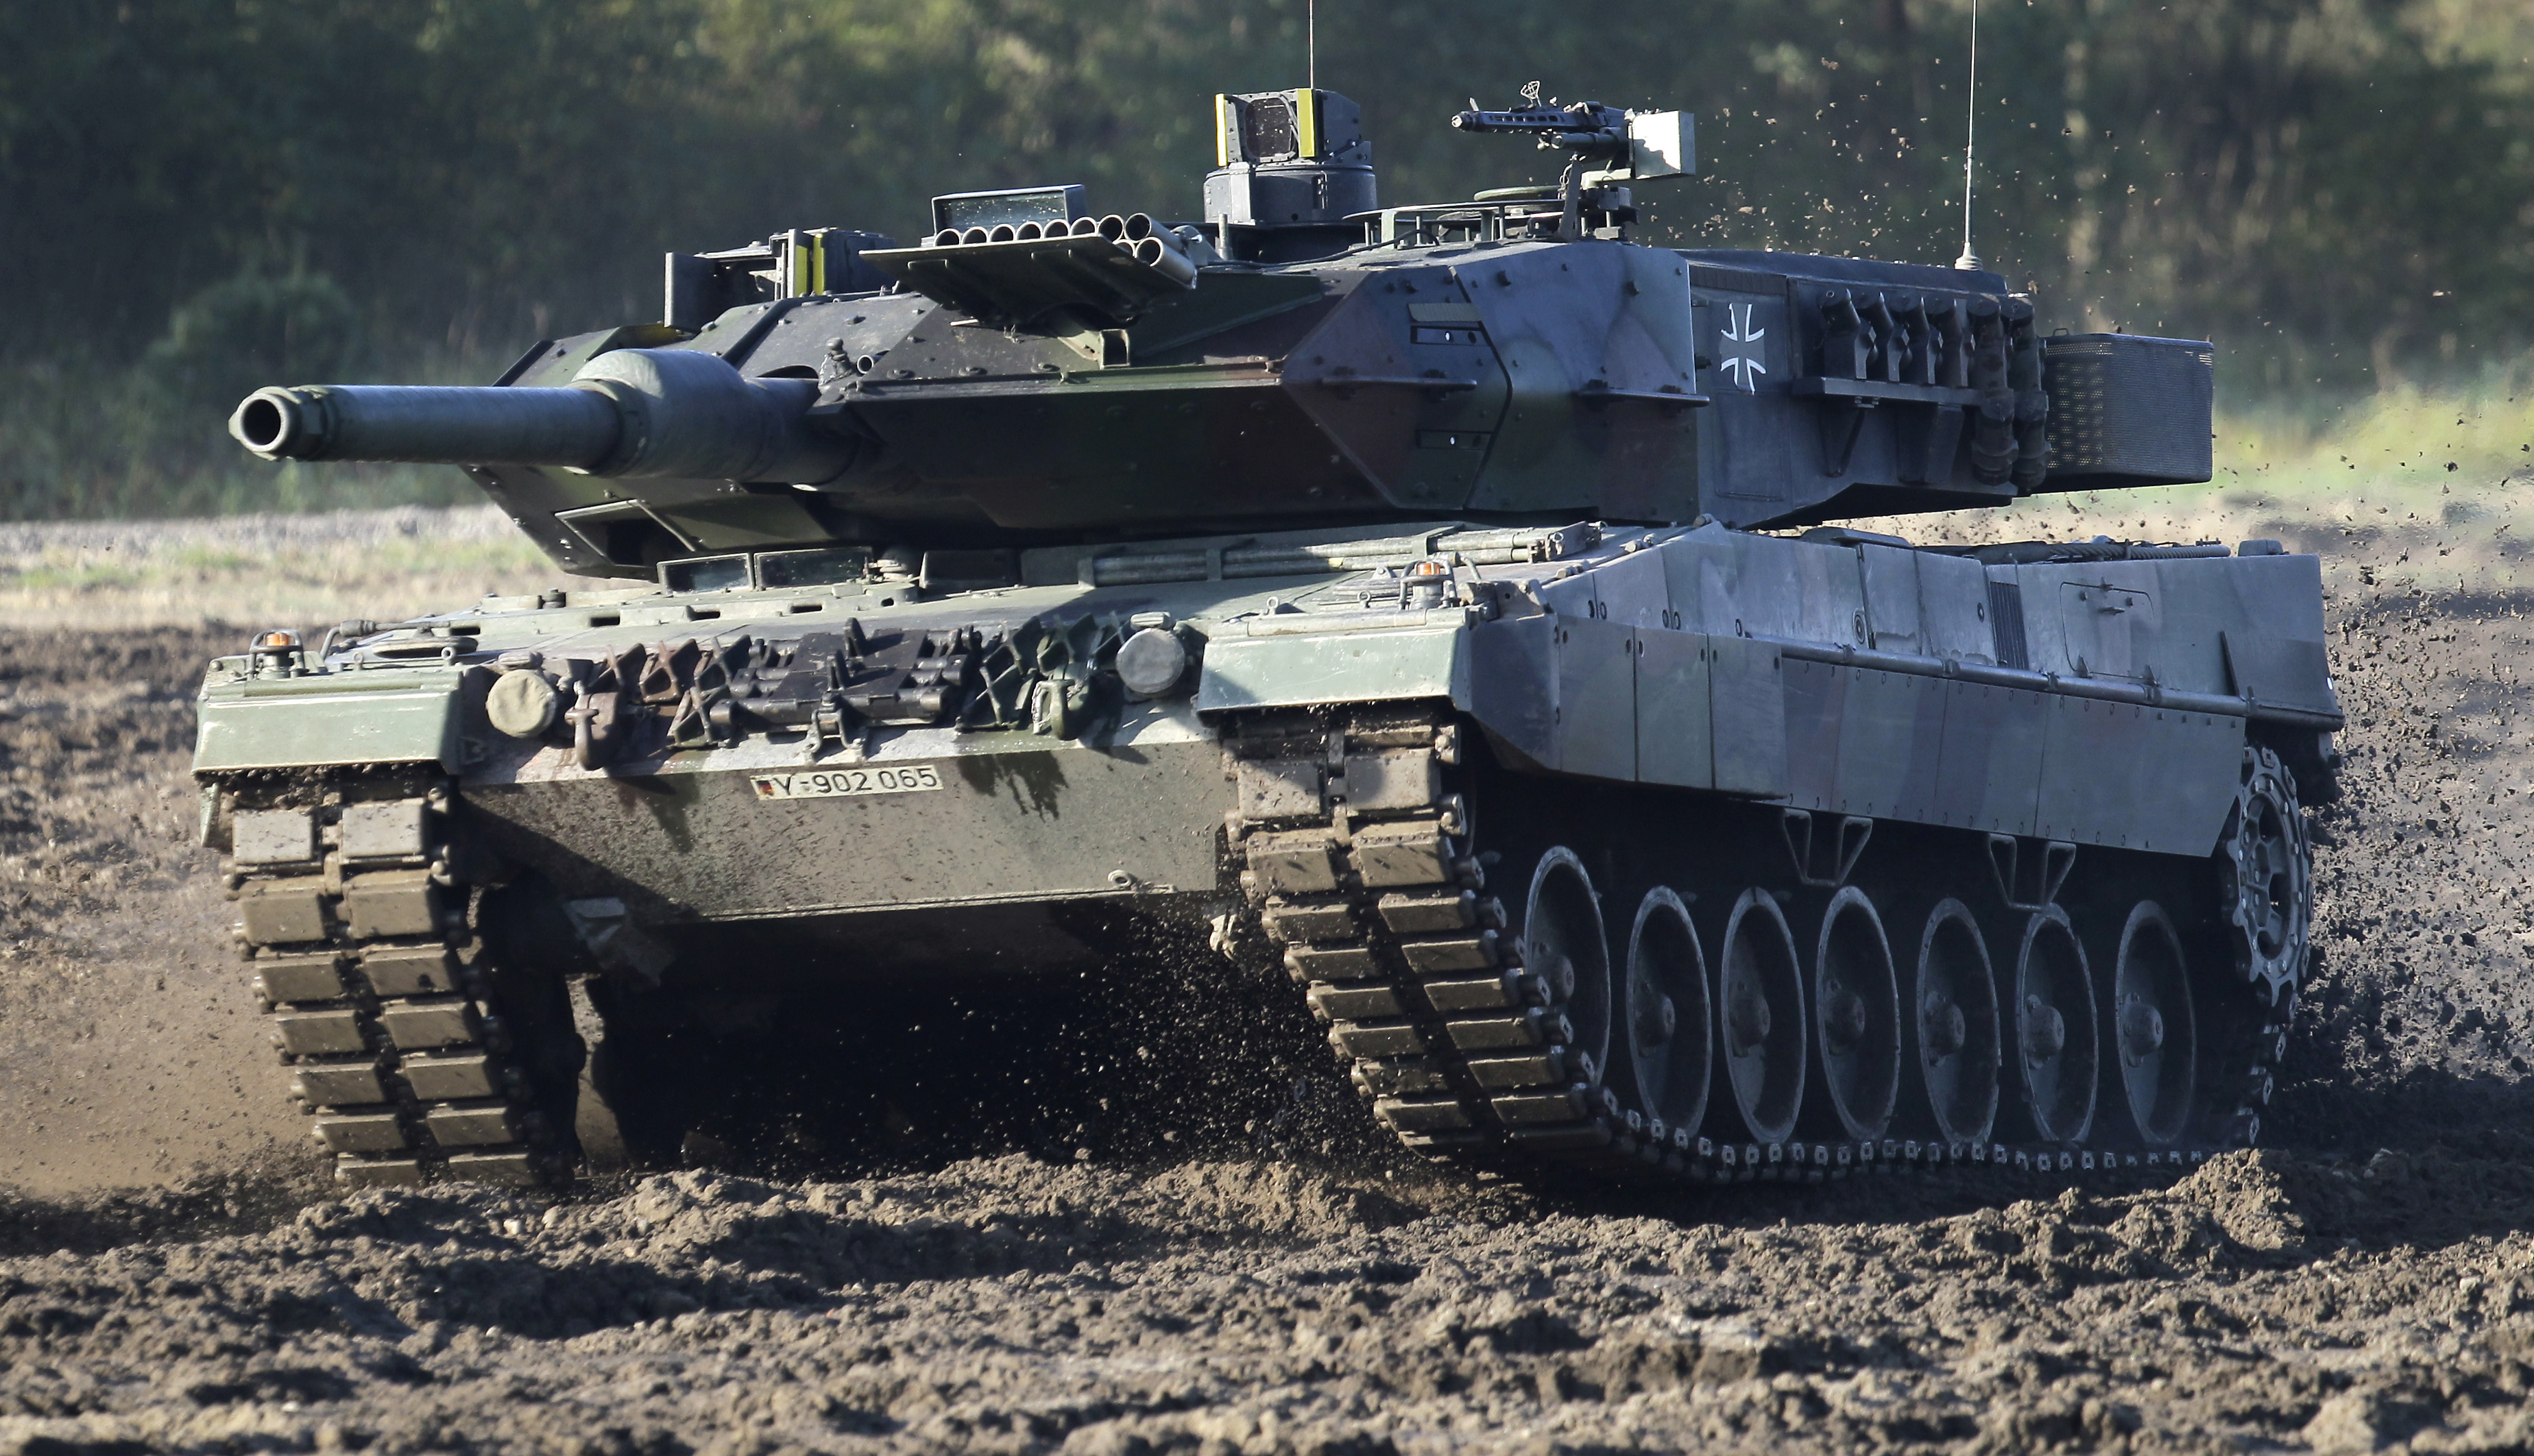 En esta imagen de archivo, un tanque Leopard 2 durante una demostración para medios alemanes organizado por las fuerzas armadas de Alemania en Munster, cerca de Hannover, Alemania, el 28 de septiembre de 2011. (AP Foto/Michael Sohn, archivo)